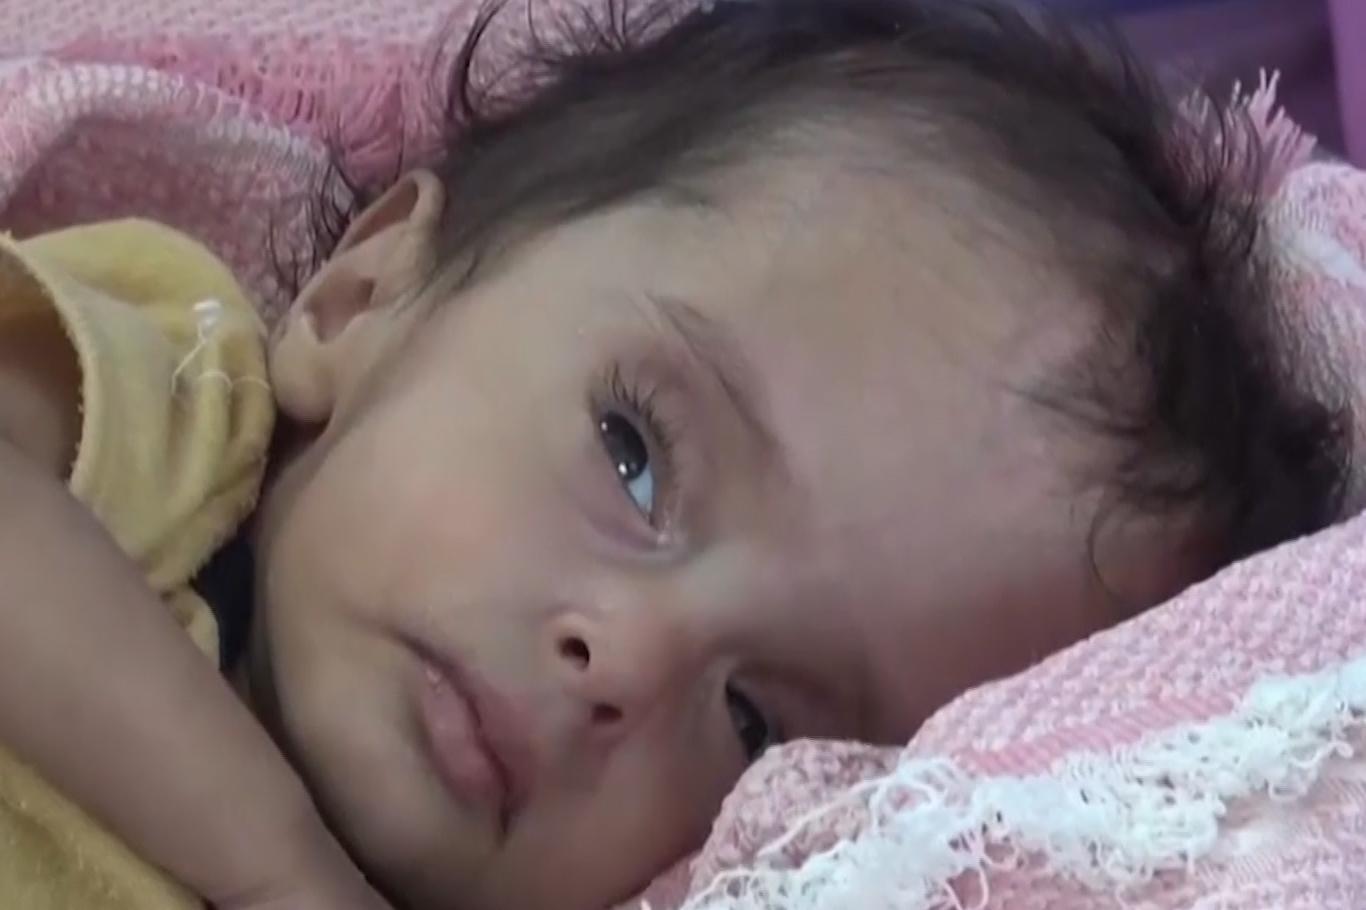 الأطفال هم الأكثر تضررا من الحرب في اليمن